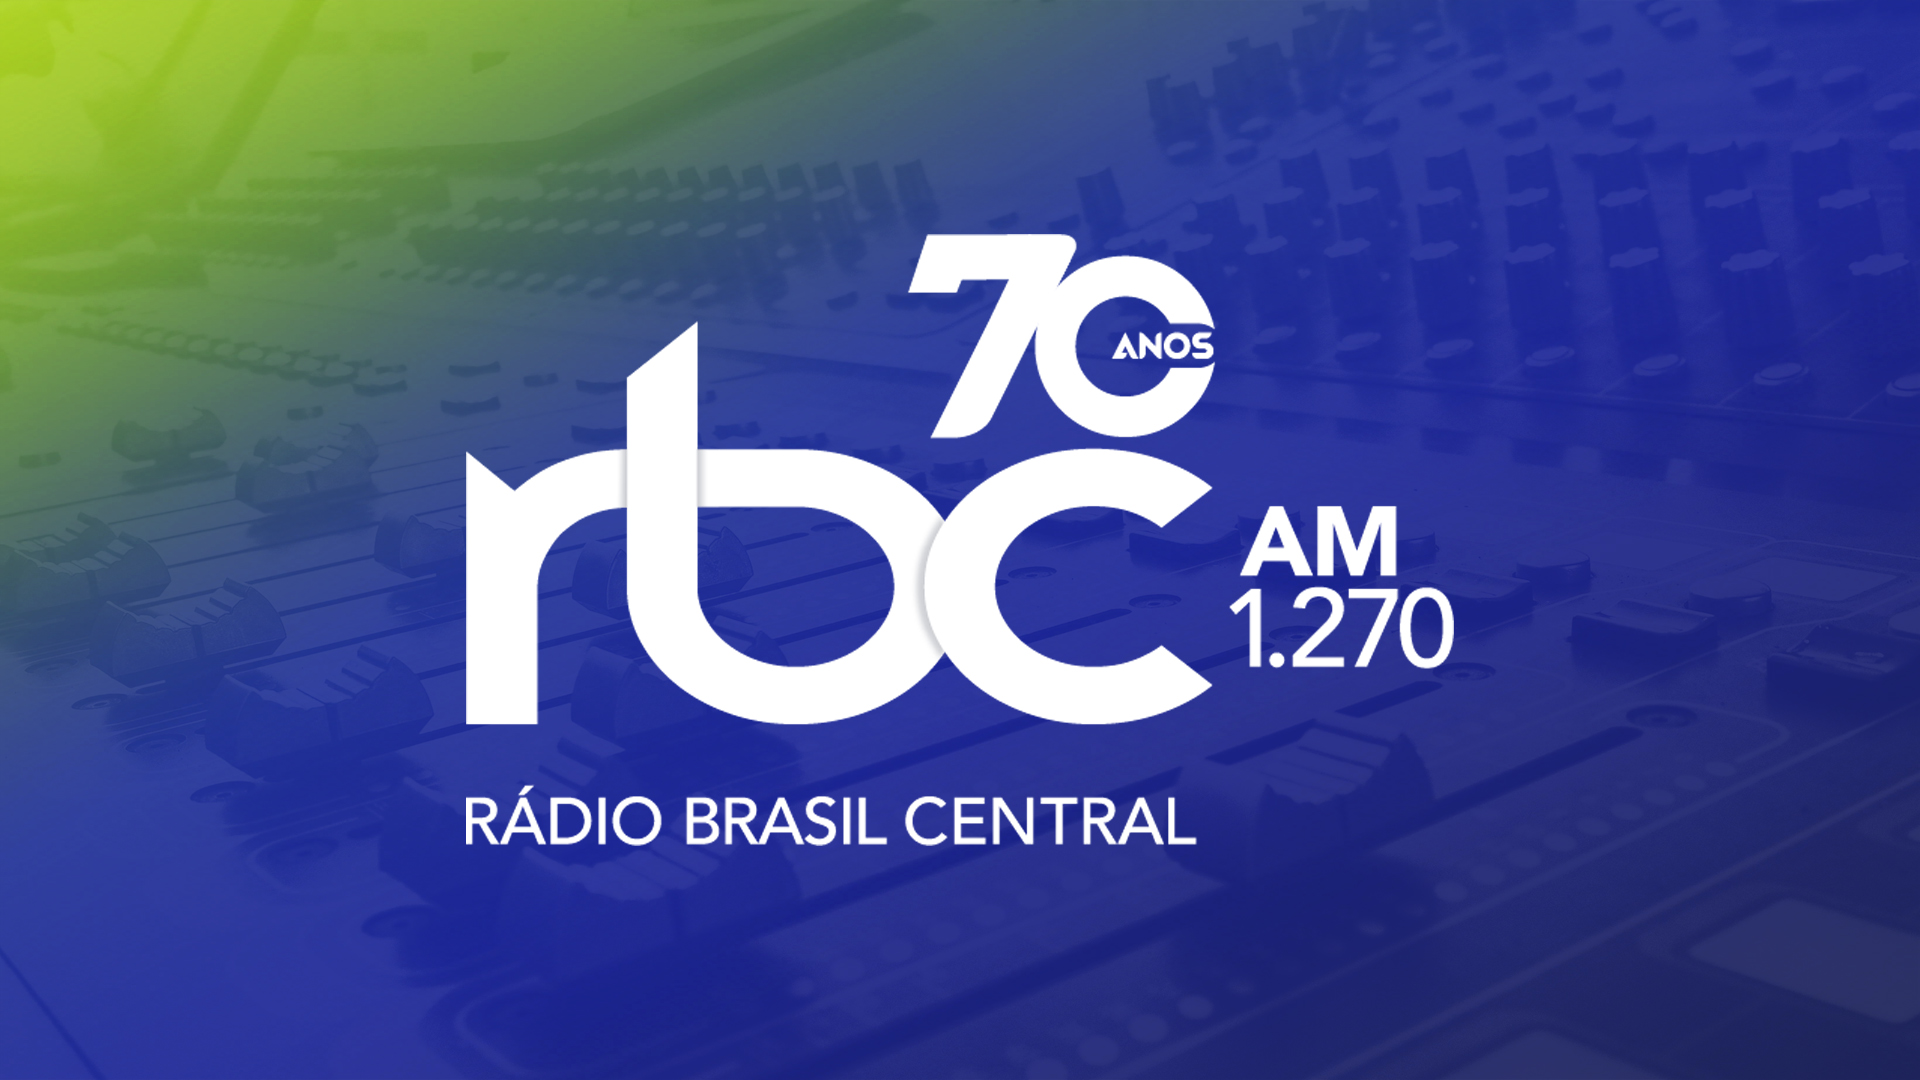 Imagem comemorativa do 70 anos da Rádio Brasil Central